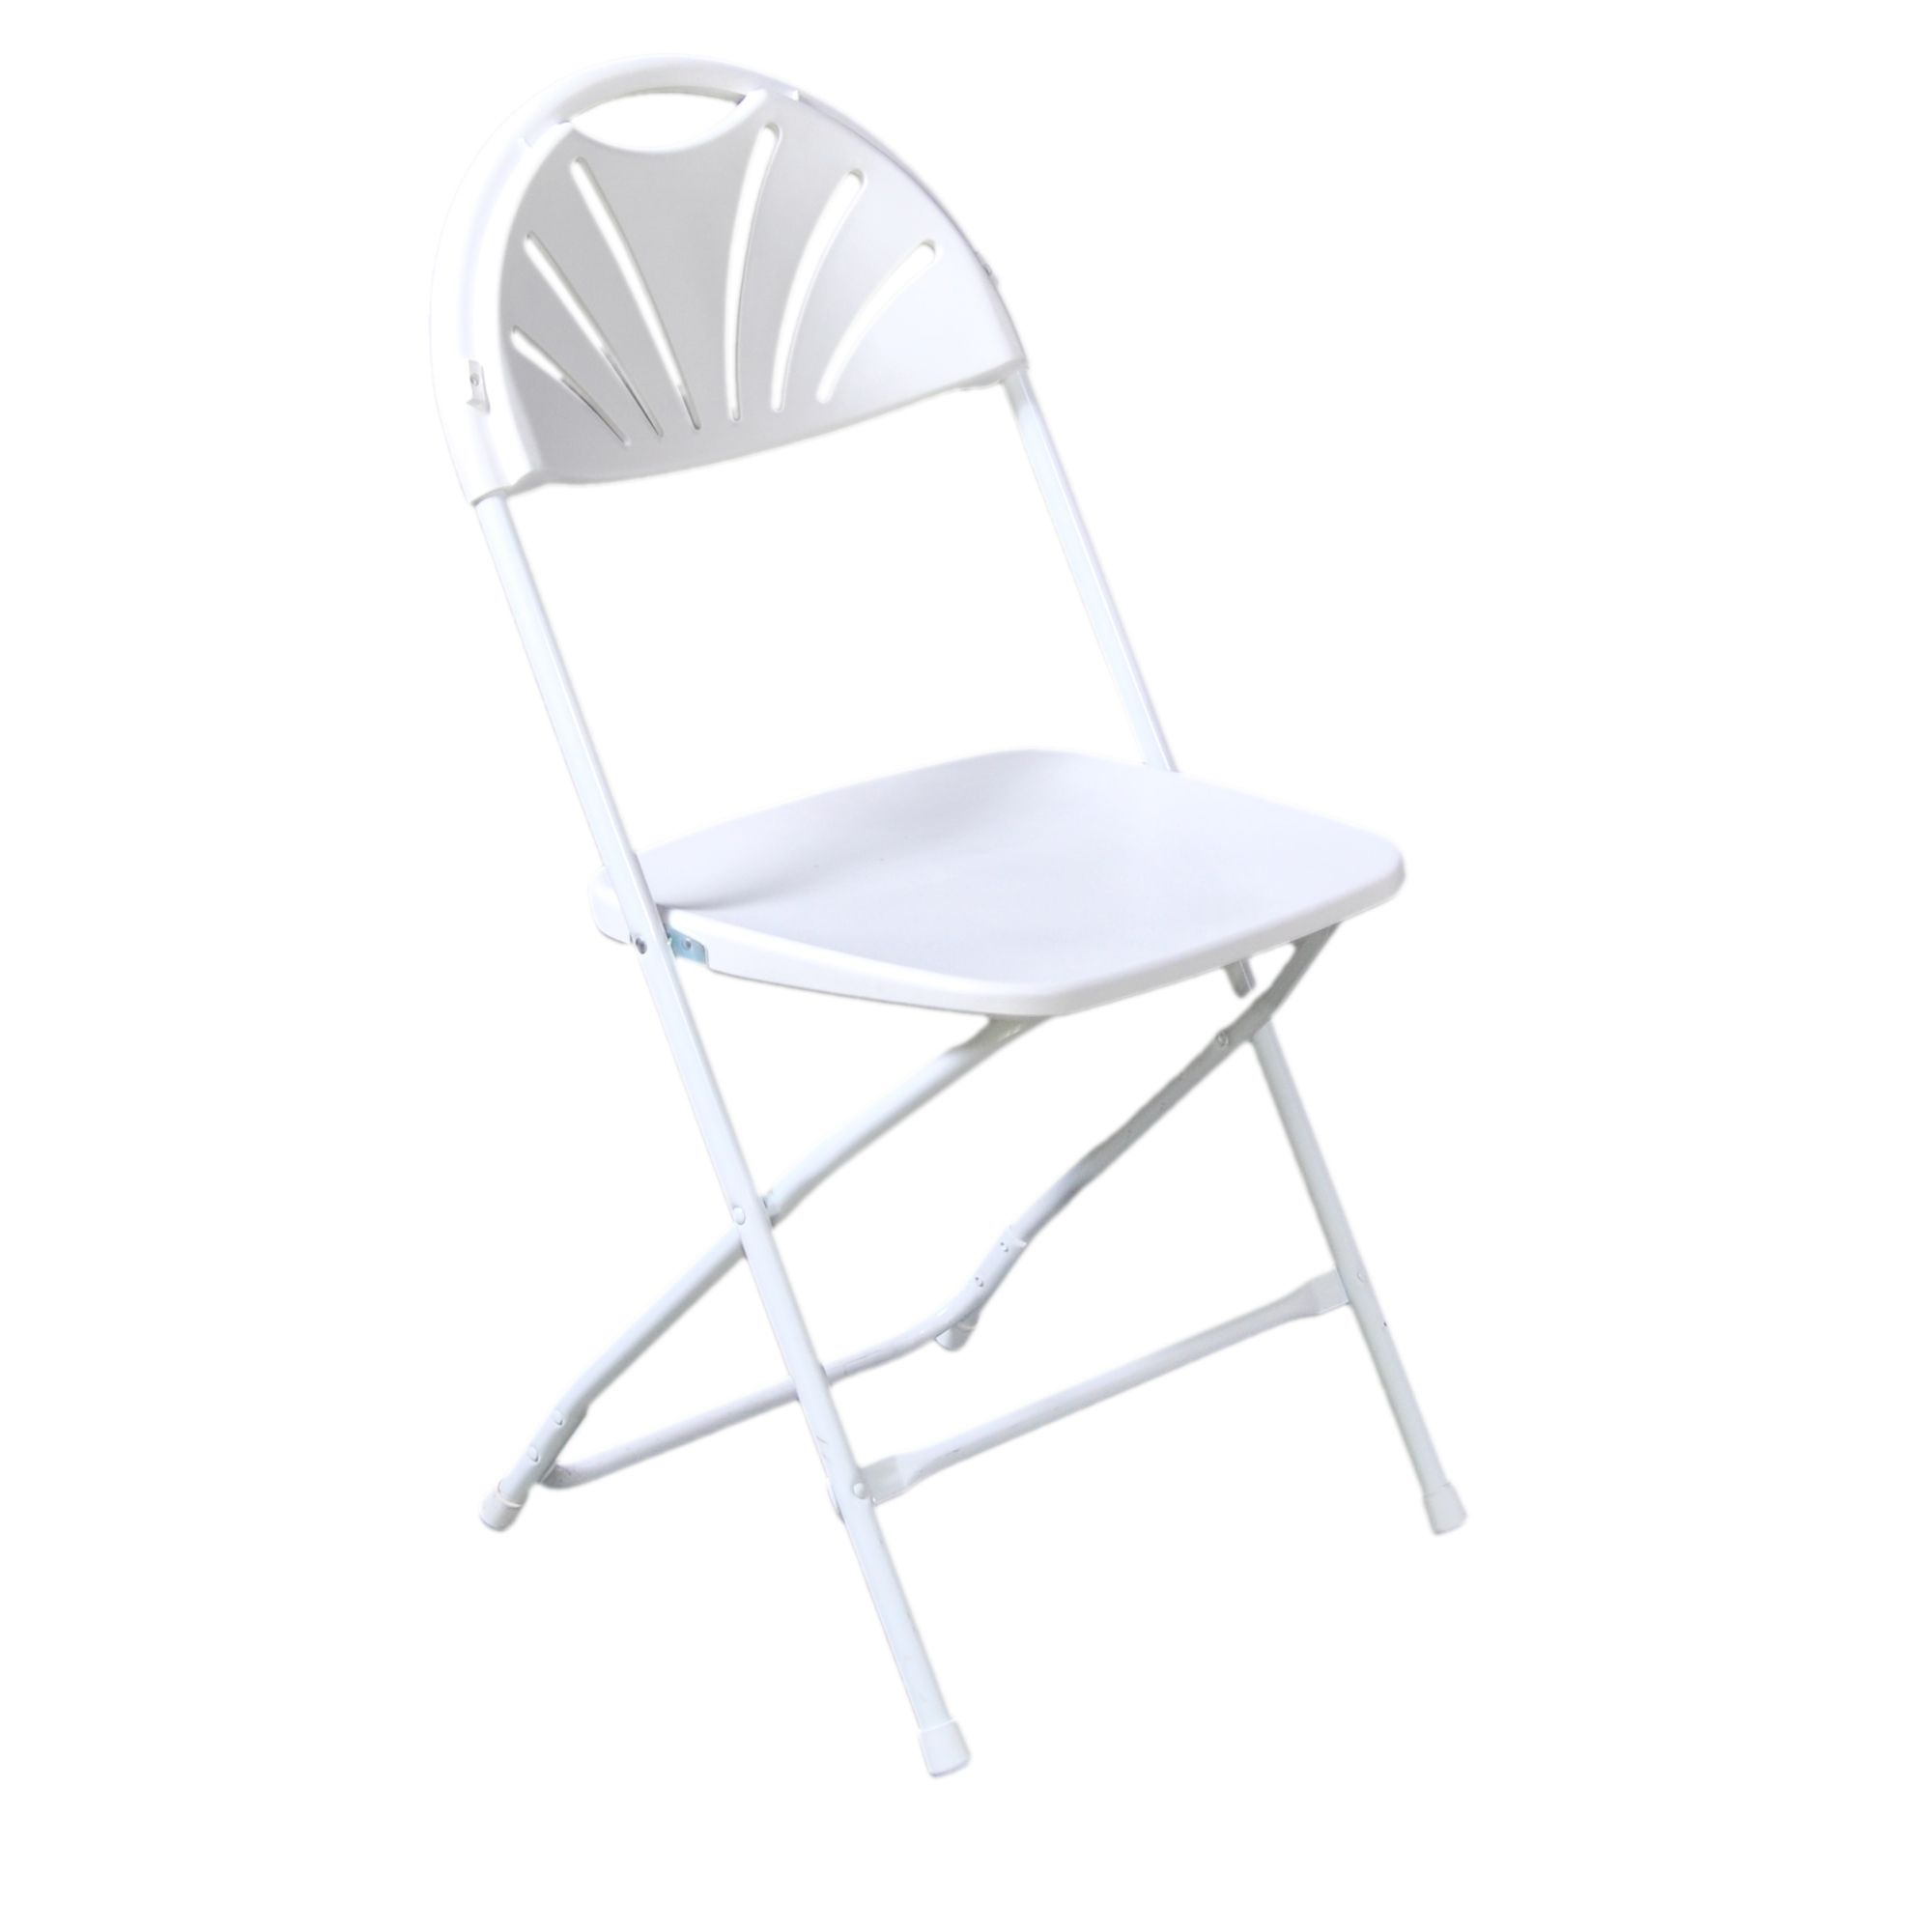 Cls-l4-wh - chaise pliante - cti - dossier plastique blanc_0